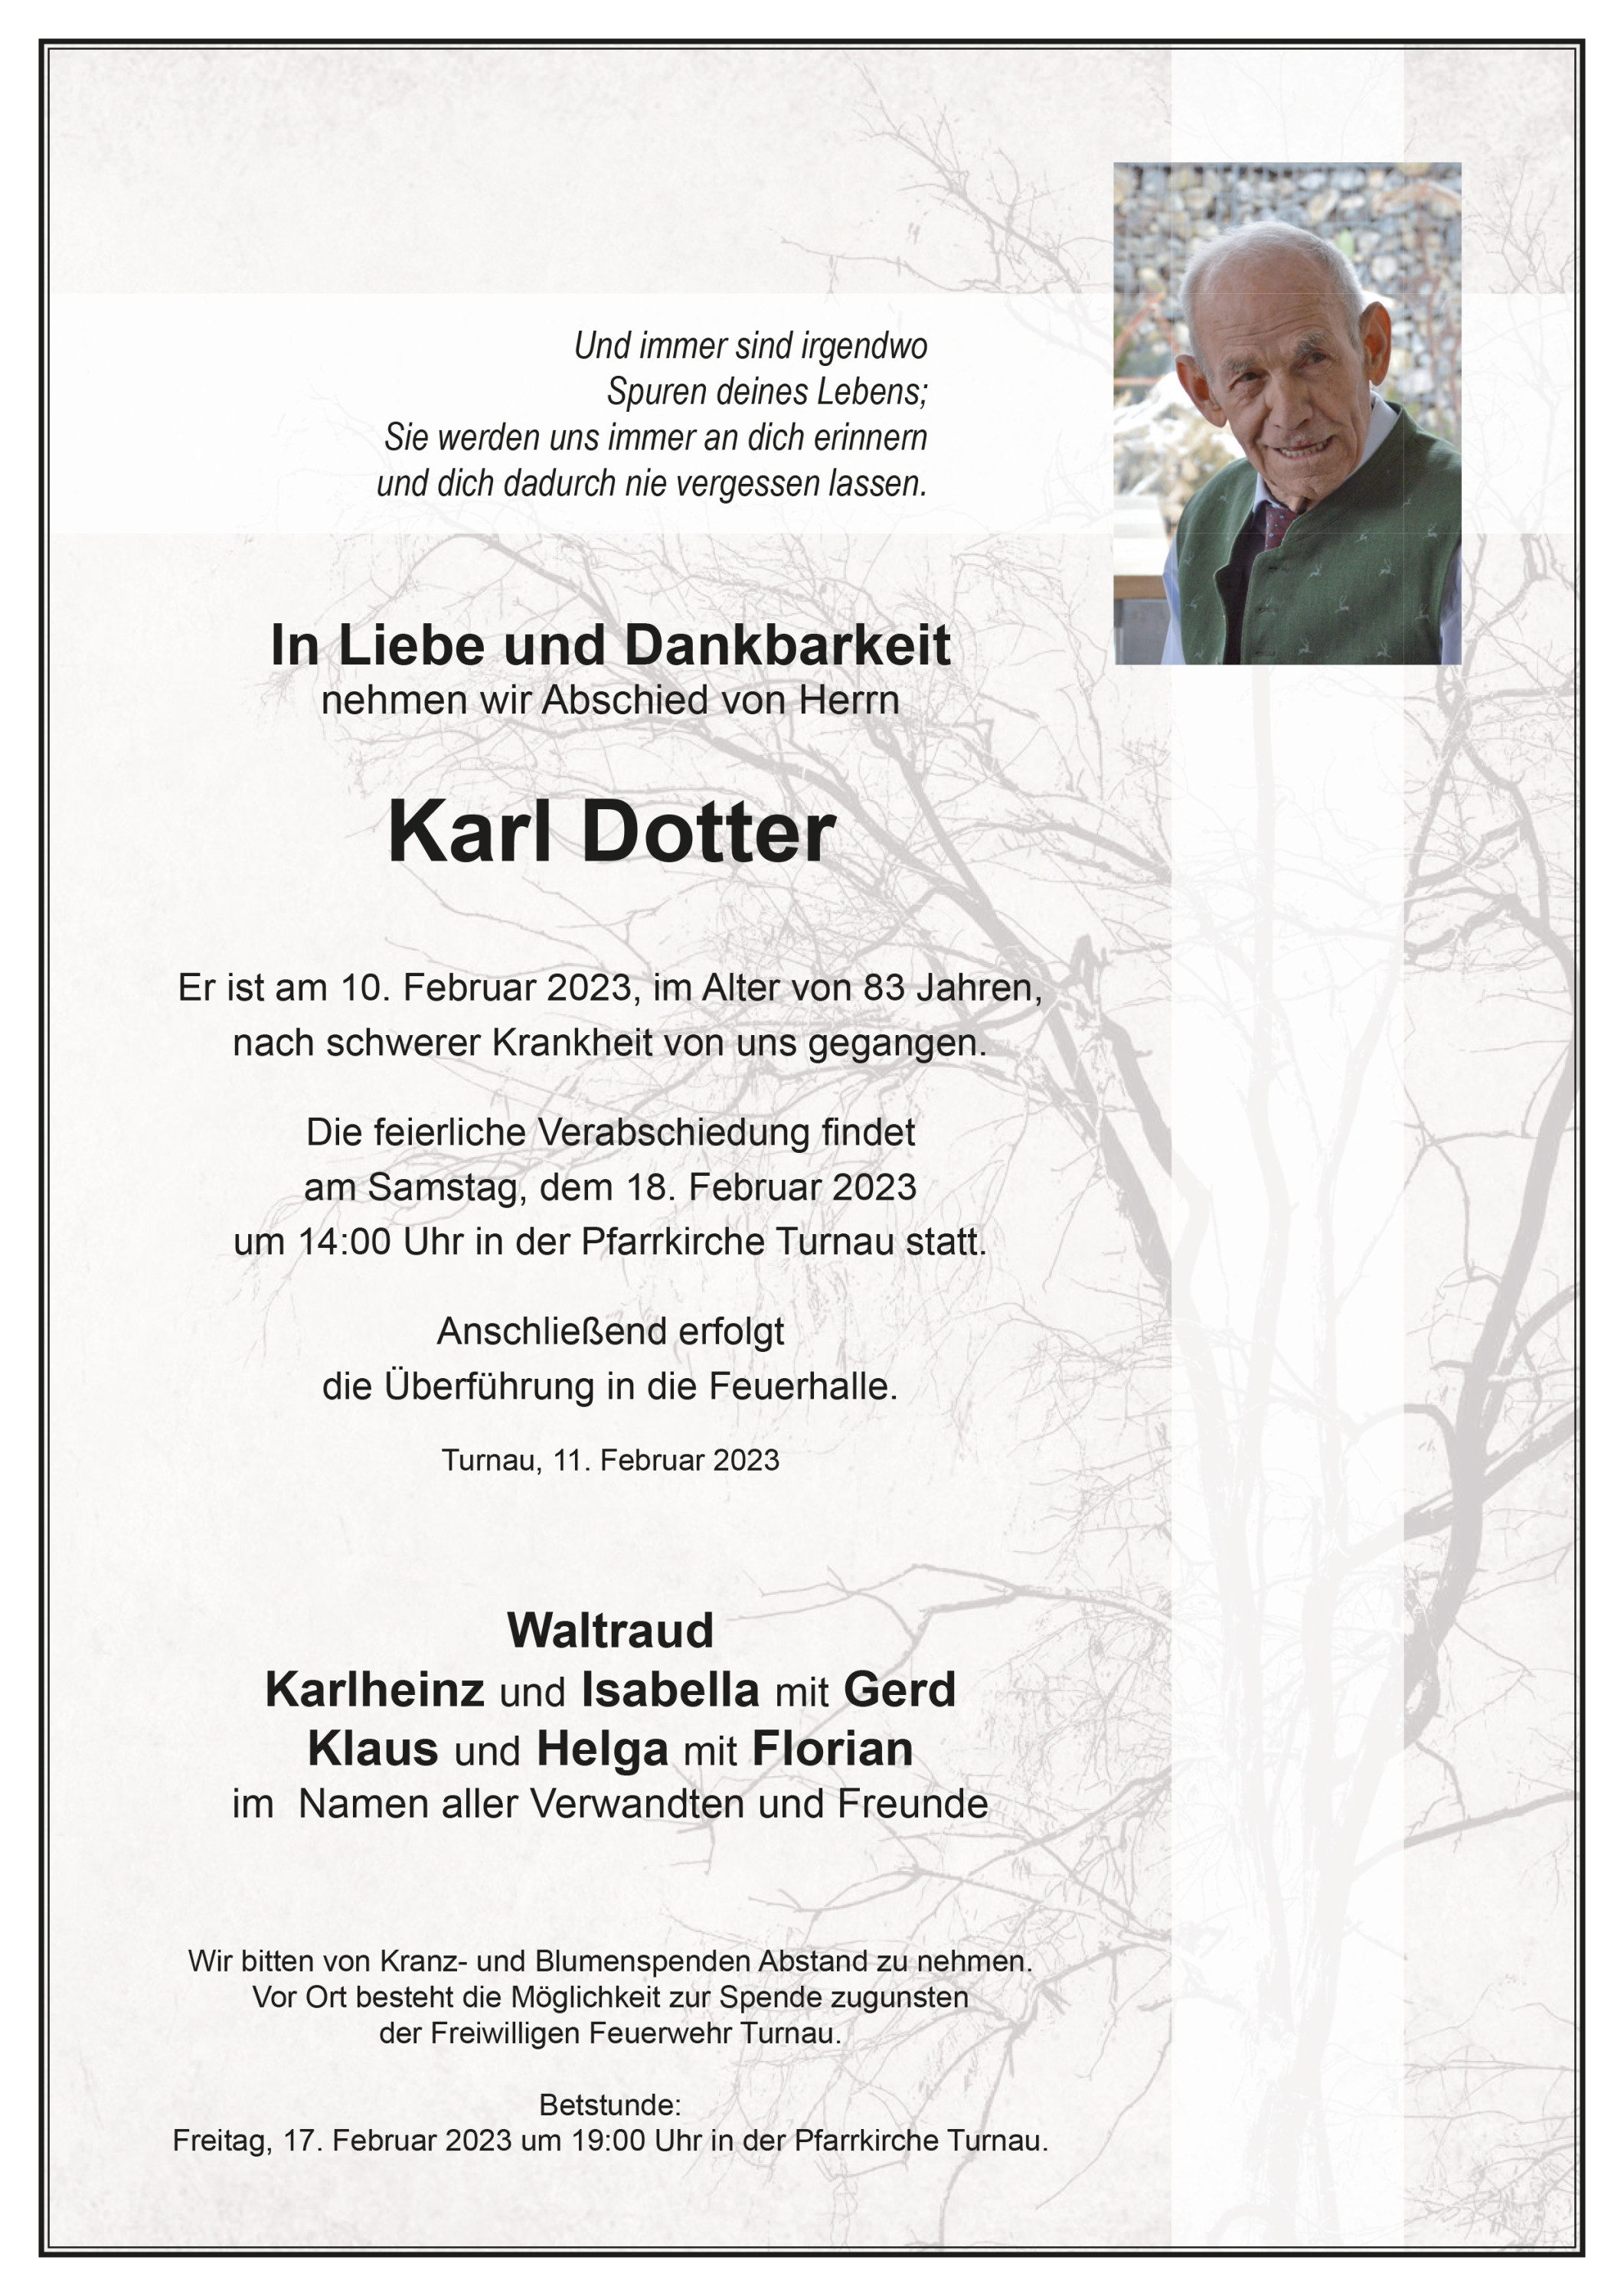 Karl Dotter